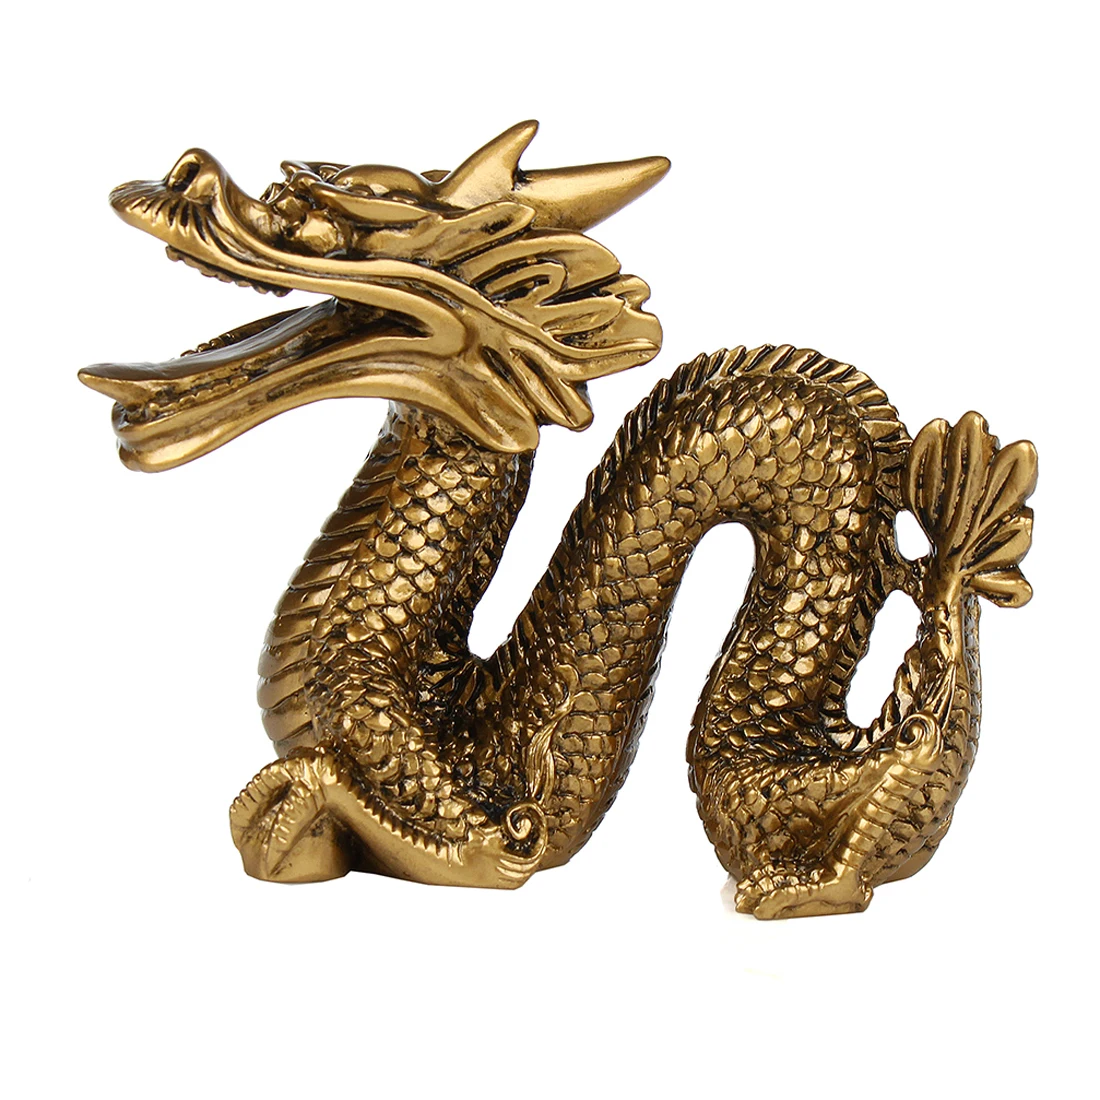 Китайская геотехническая статуя Jinlong талисман и успешные предметы домашнего обихода, смола лазурный дракон, ресторанная мебель